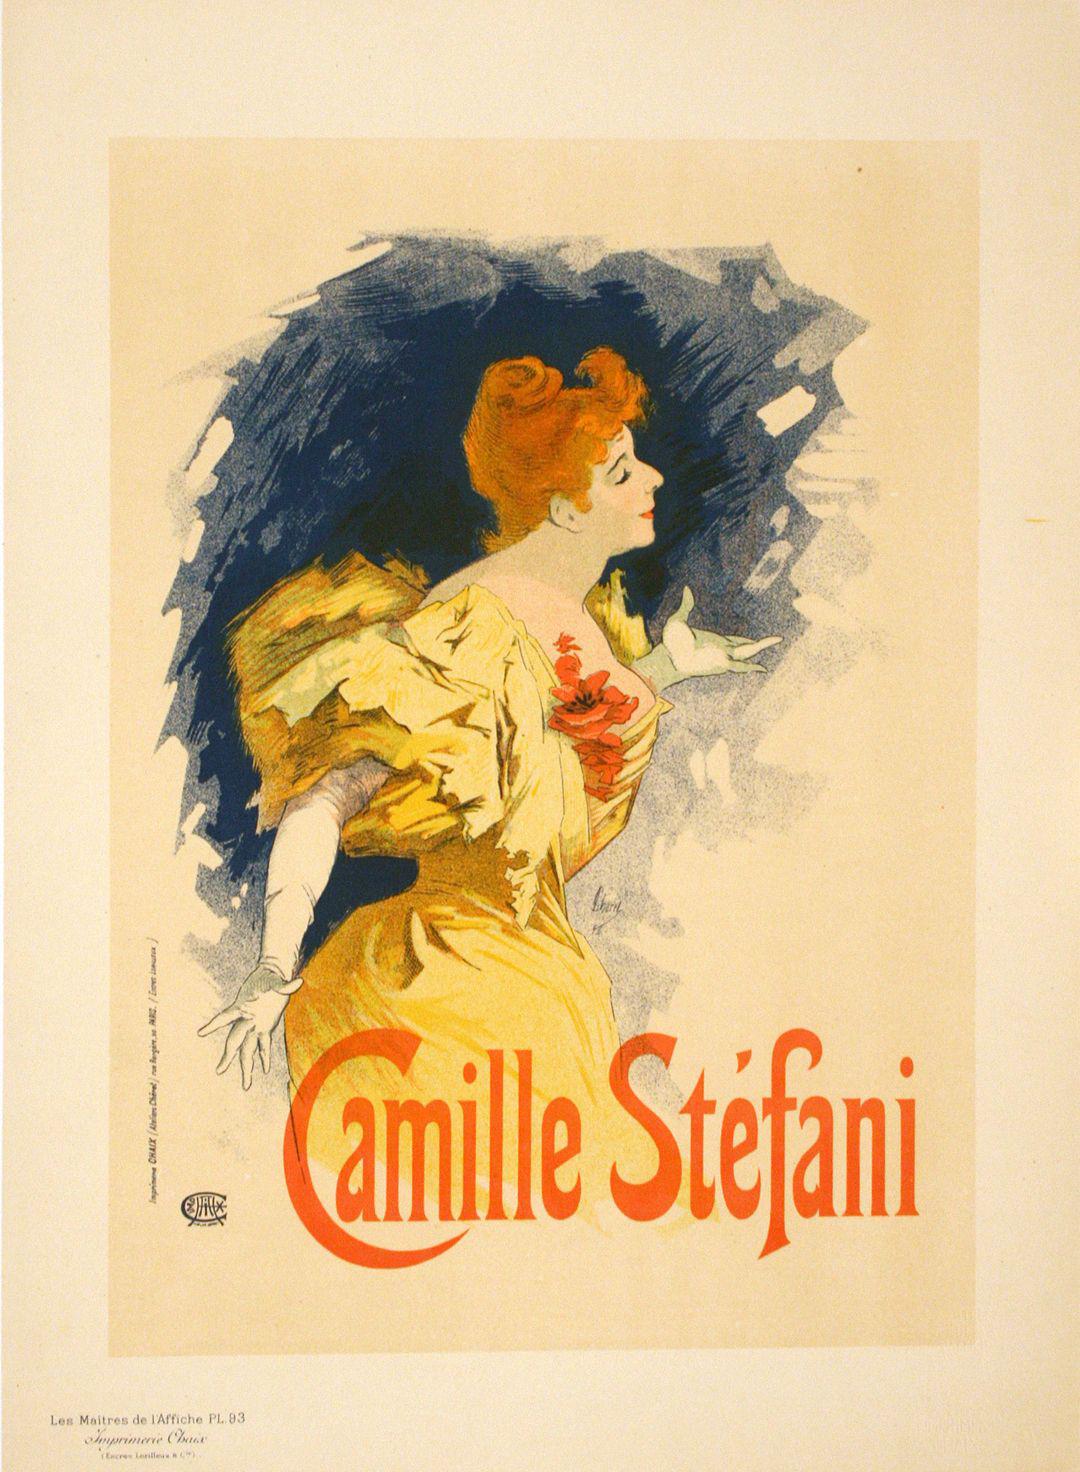 Maitres de L'Affiche Plate 93 Camille Stefani by Jules Cheret 1896 Original